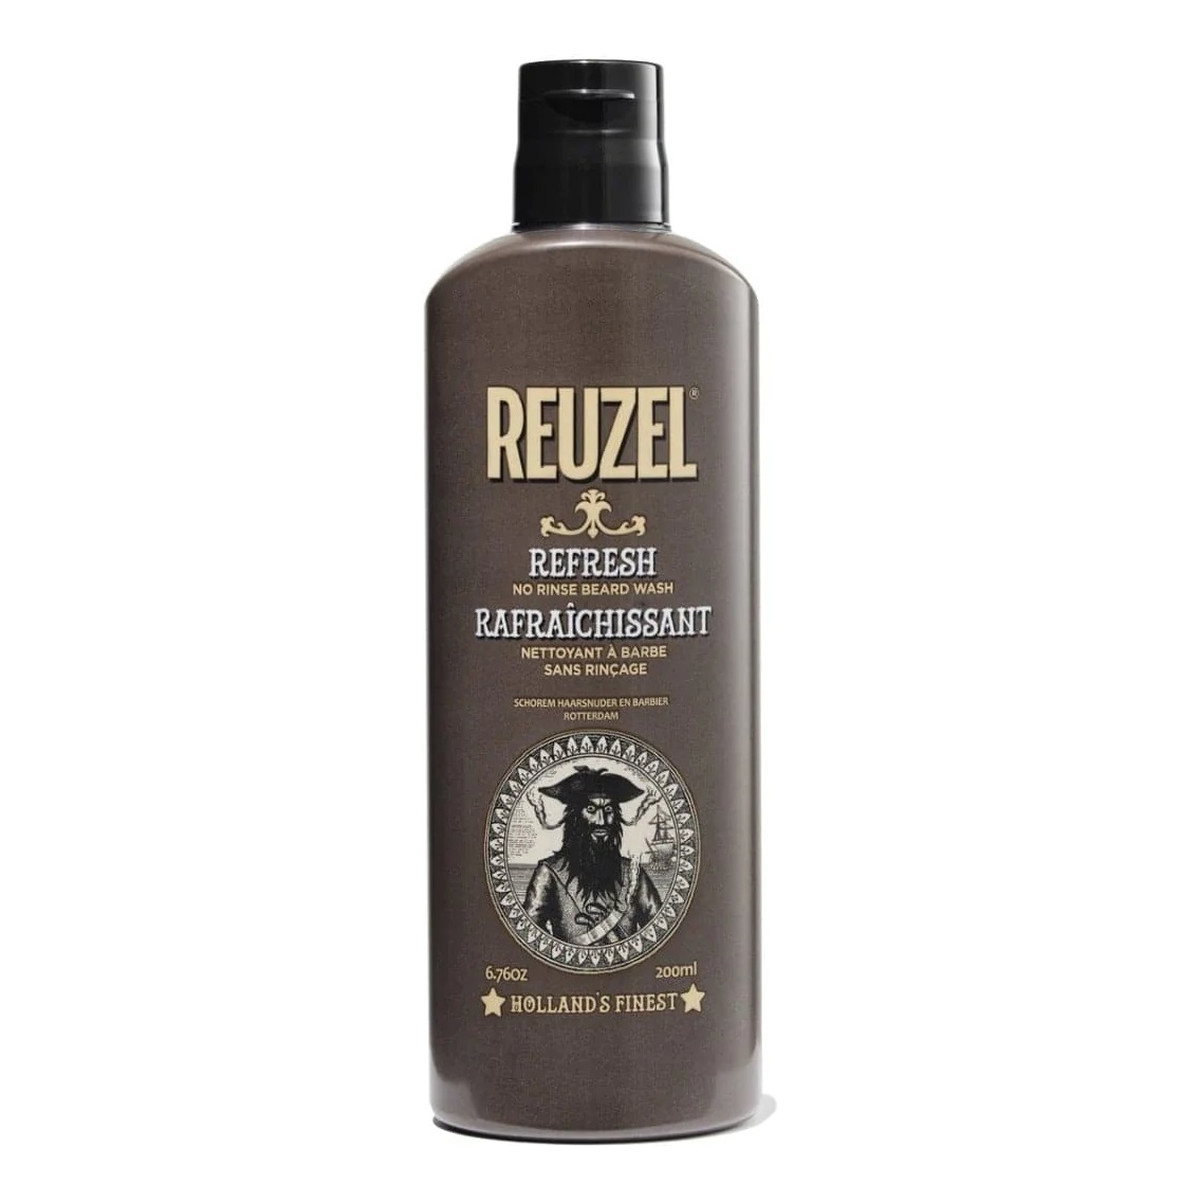 Reuzel No rinse beard wash suchy szampon do brody bez spłukiwania refresh 200ml